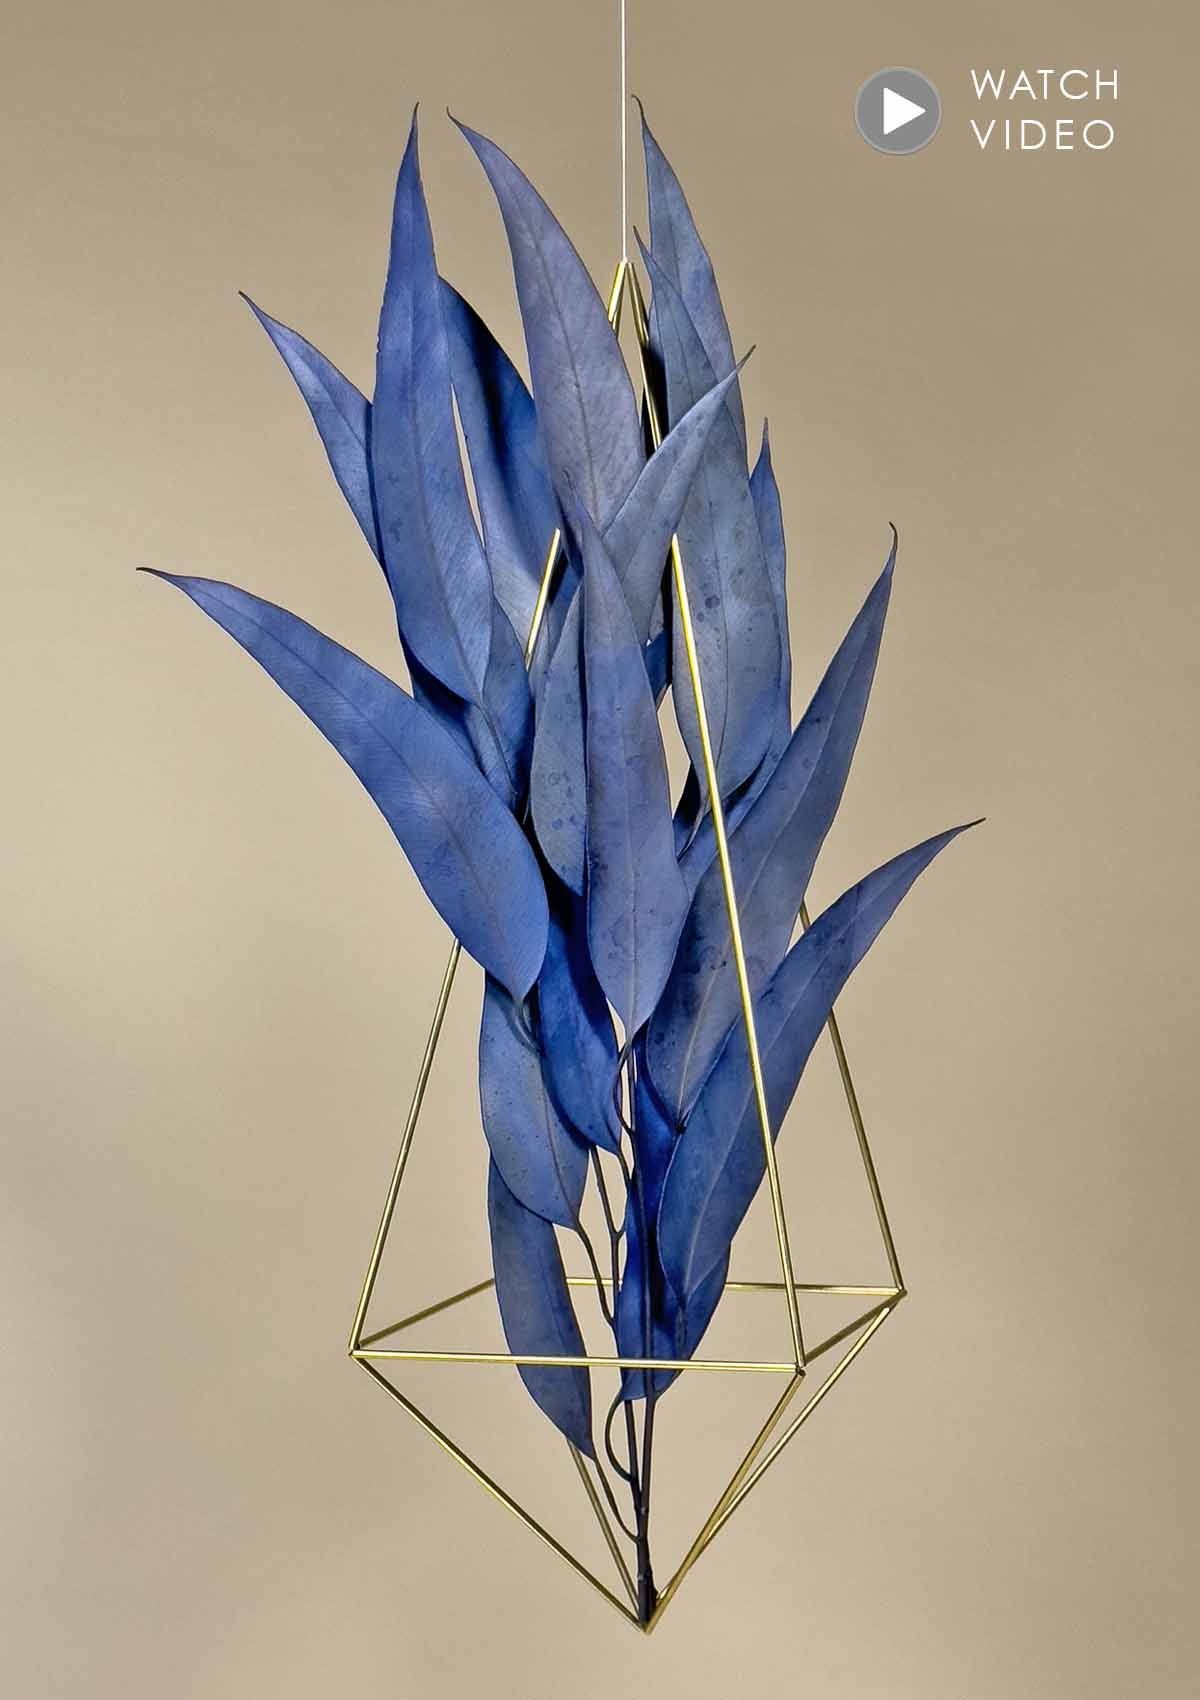 Das EUCALYPTUS FLOWER MOBILE ist ein handgefertigtes Design-Mobile in der Größe Large mit 2 eleganten, dunkelblau-anthrazit farbenen Stielen Eucalyptus Trockenblumen.